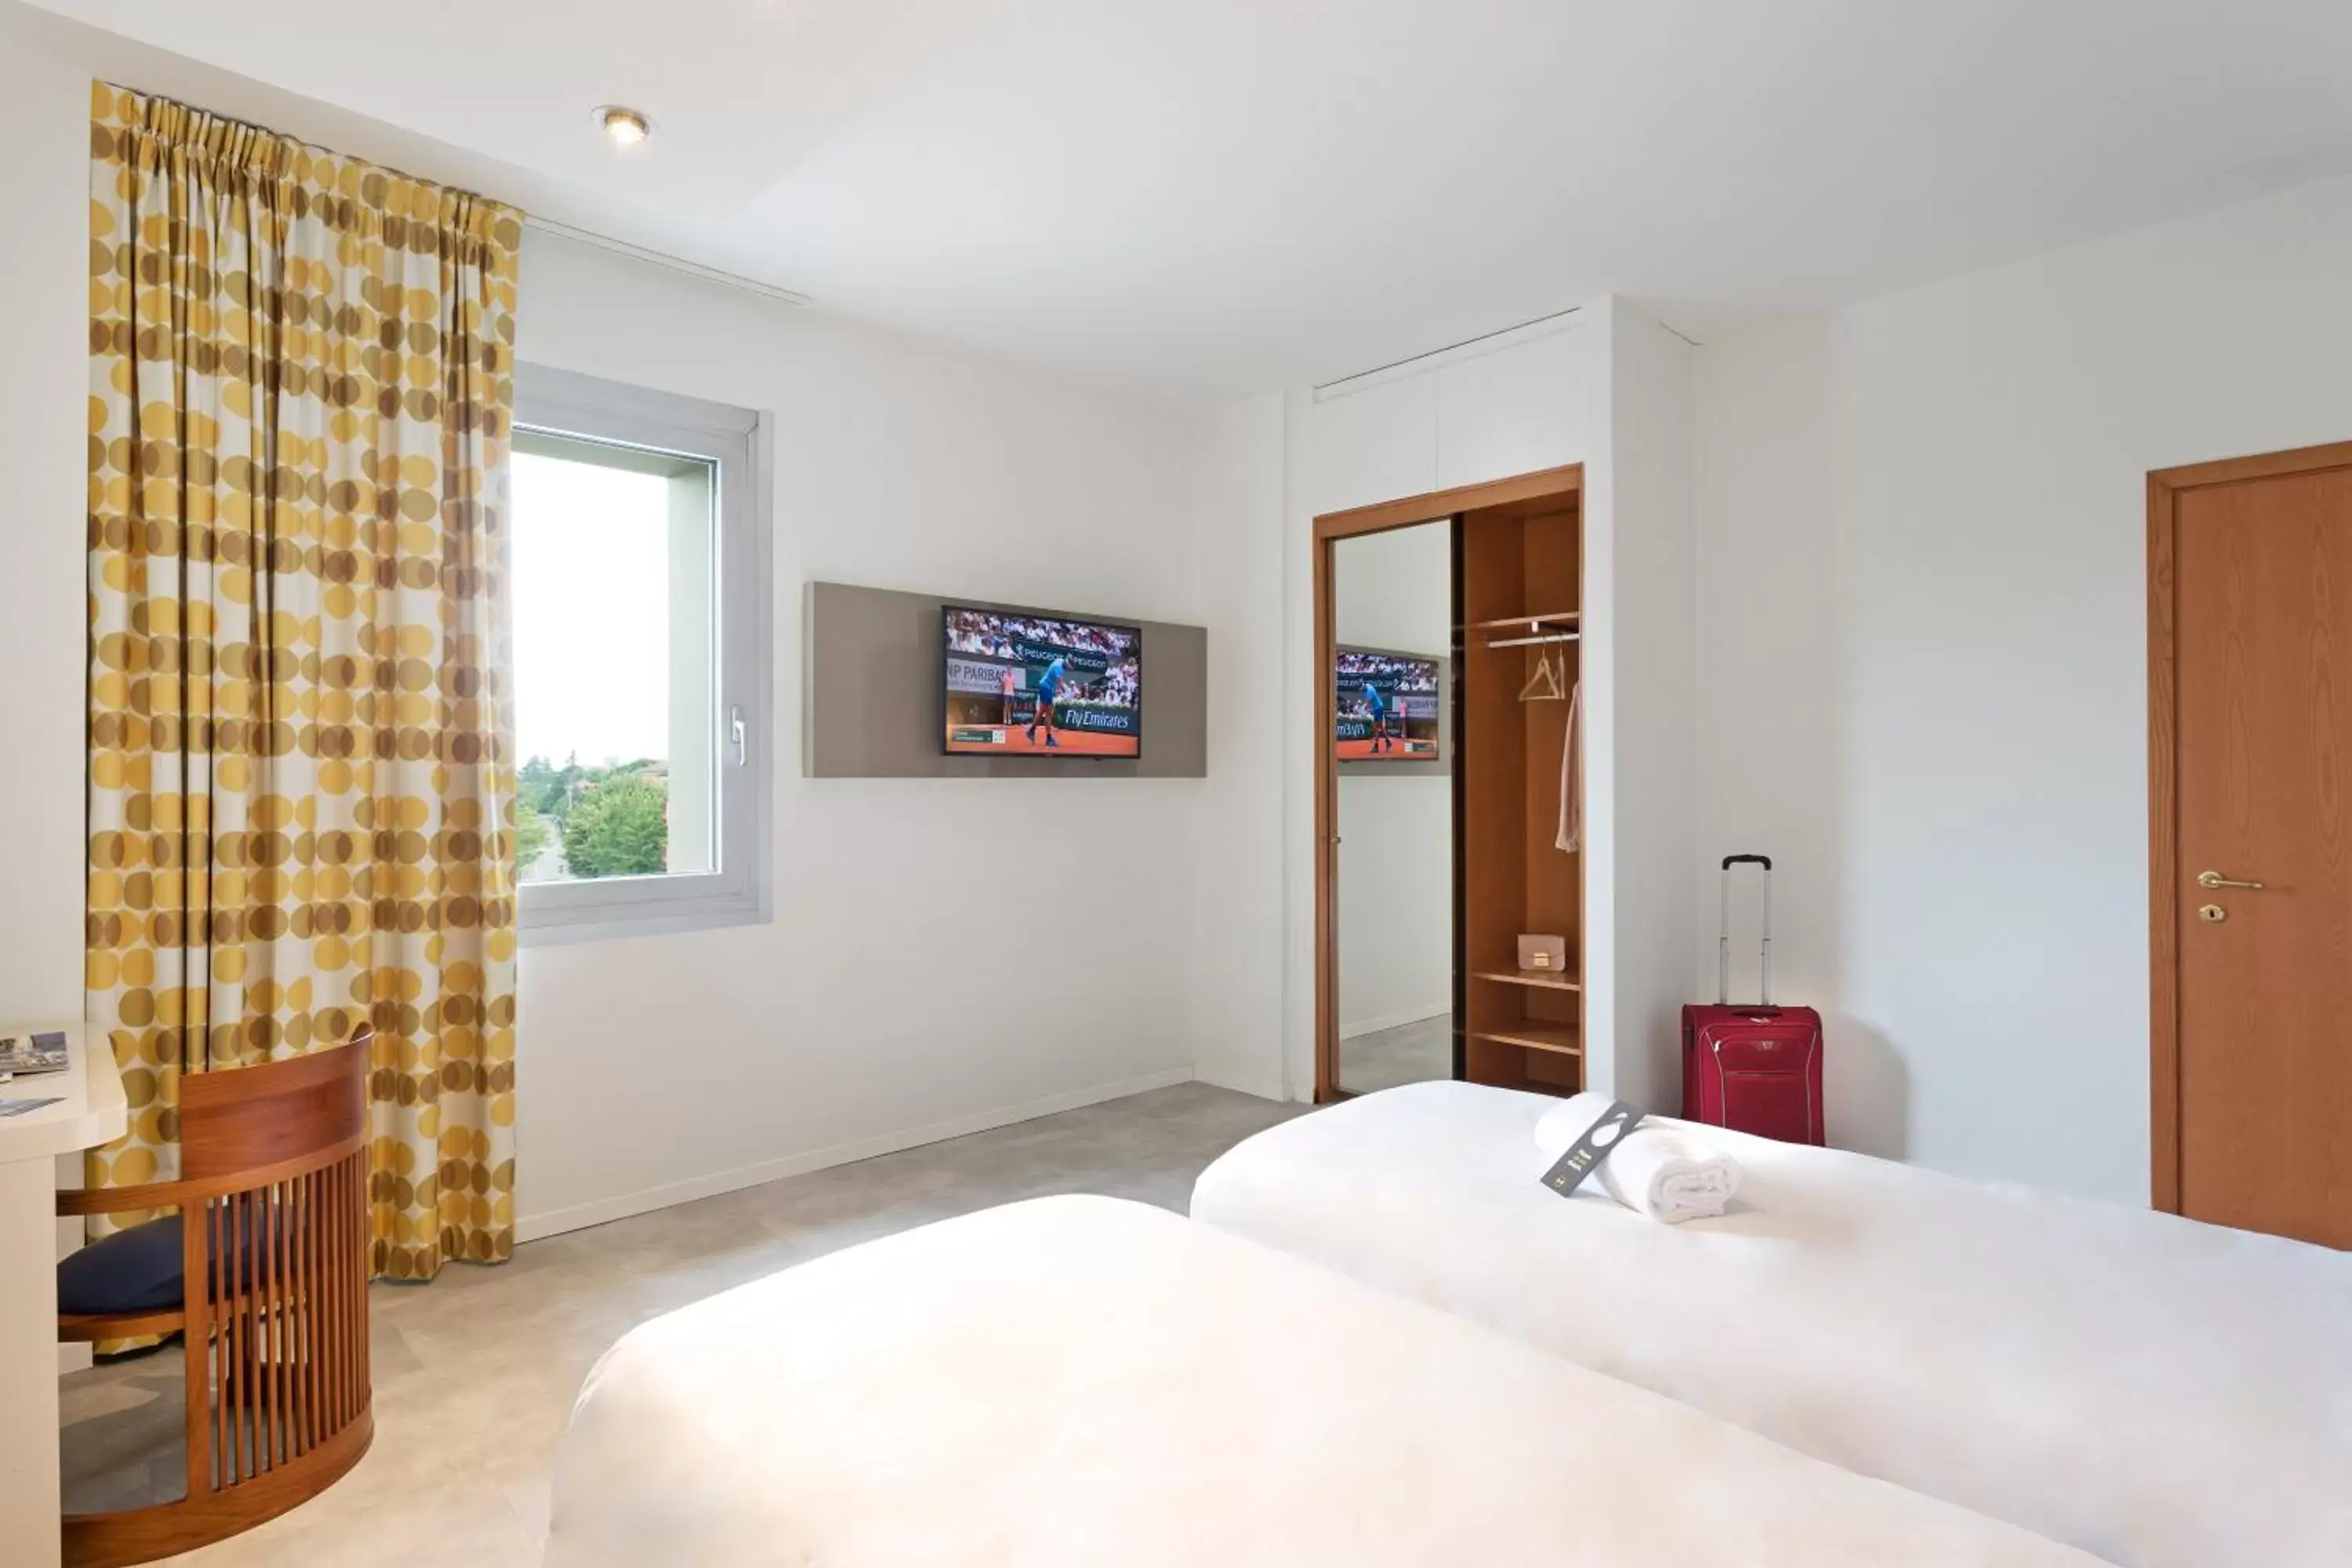 Bedroom, Bed in B&B Hotel Modena